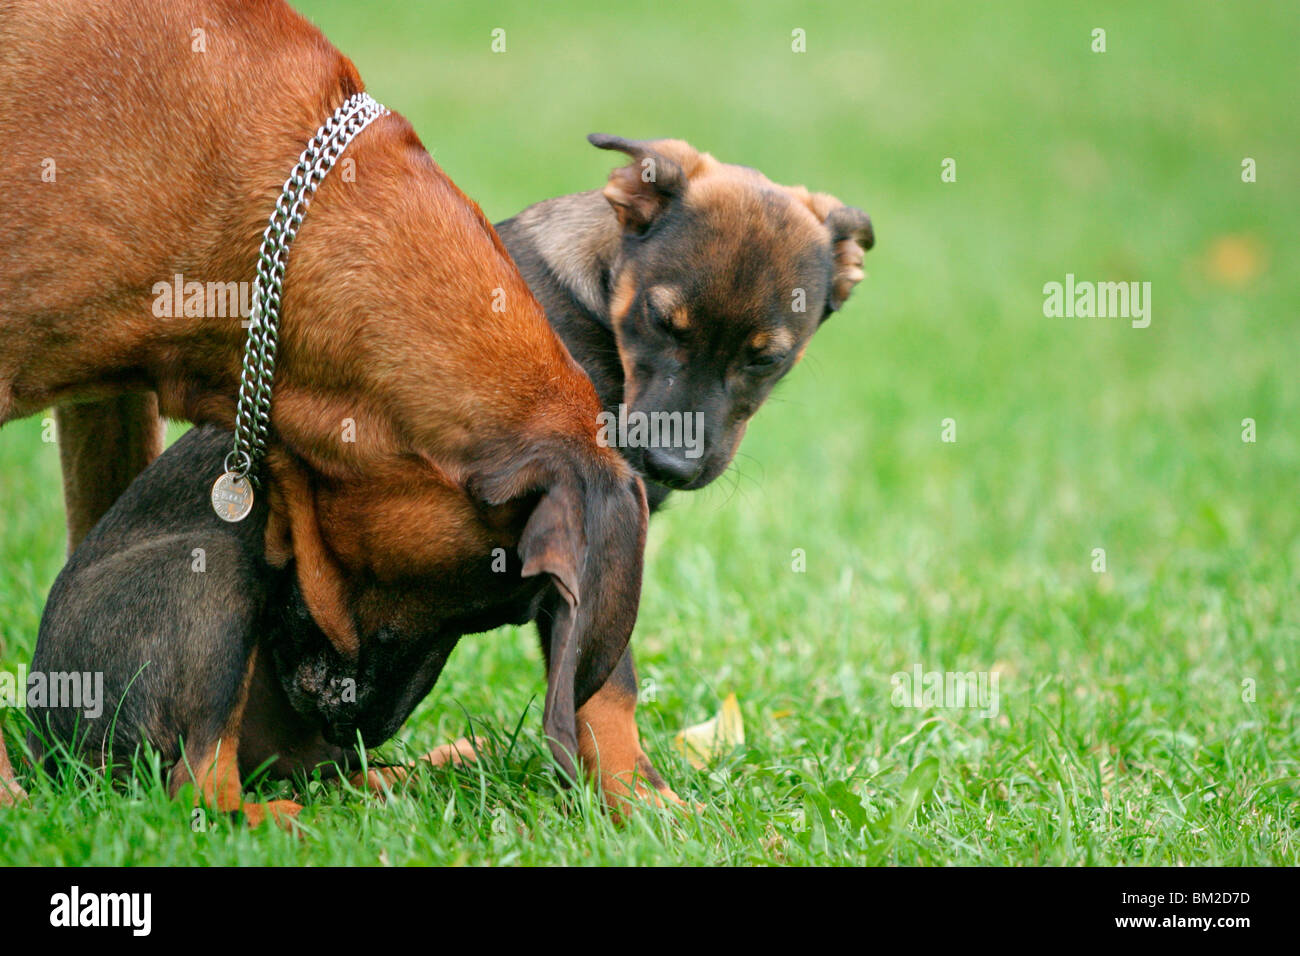 Hund beschnuppern Welpen / dog is snuffling the puppy Stock Photo